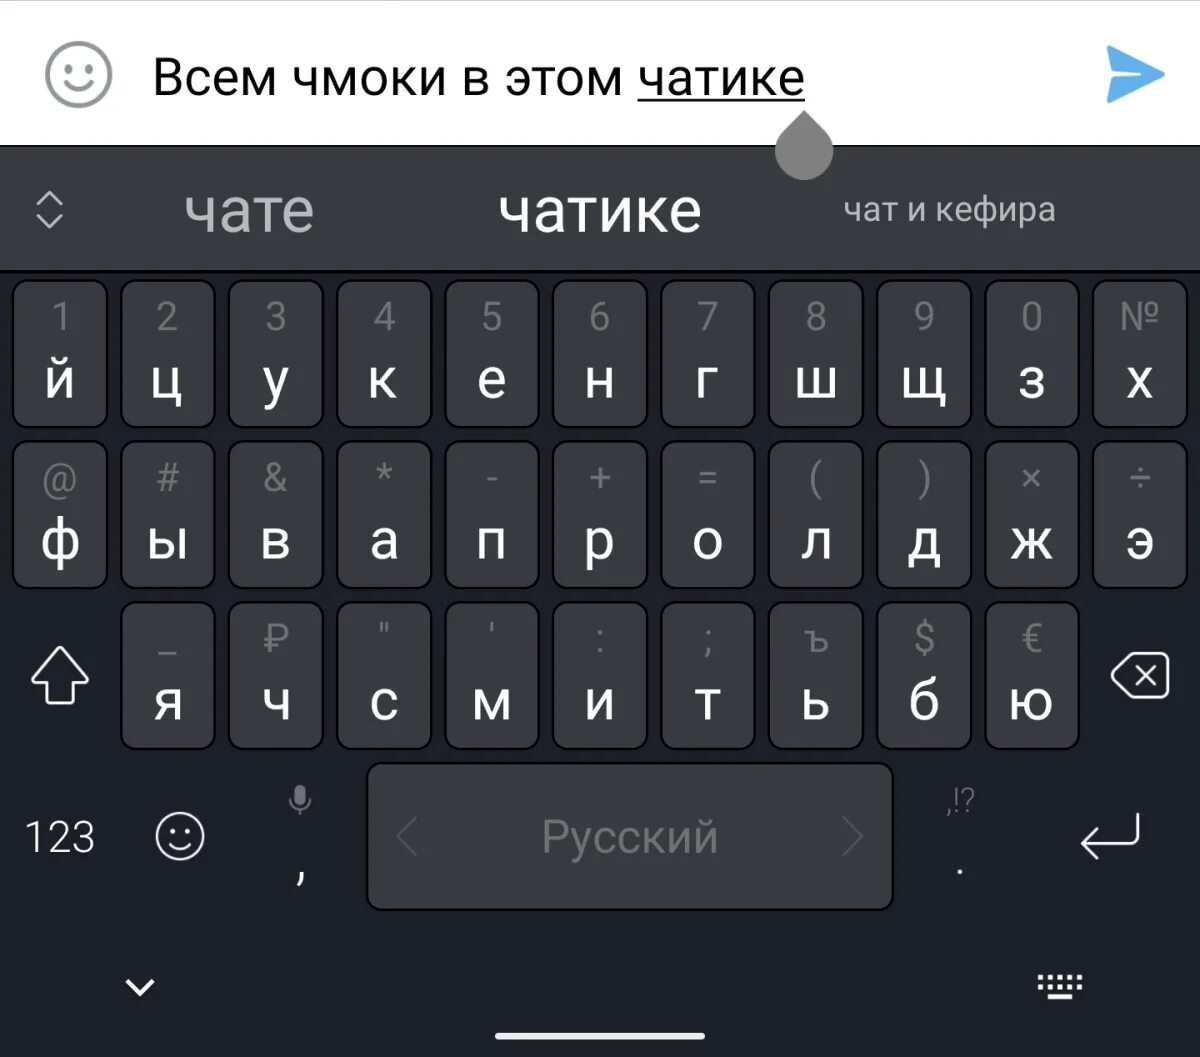 Клавиатура андроид. Раскладка клавиатуры Android. Клавиатура андроид русская. Клавиатуры на телефоне андроид Keyboard. Клавиатура на экране андроида